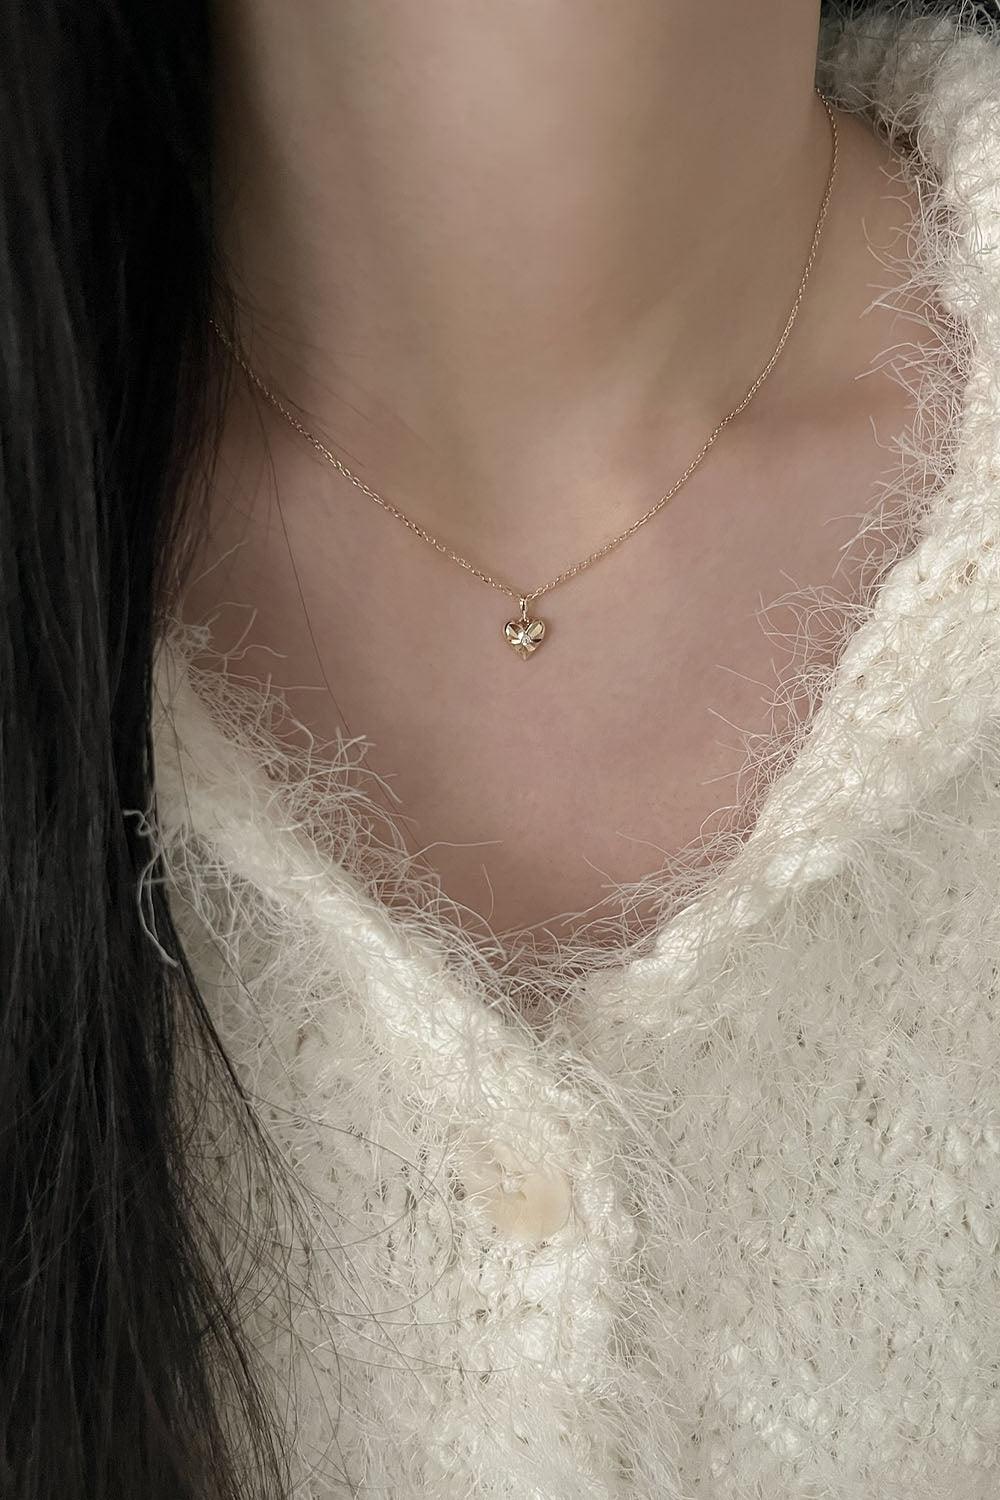 14k shining heart necklace - 4MiLi (フォーミリ)